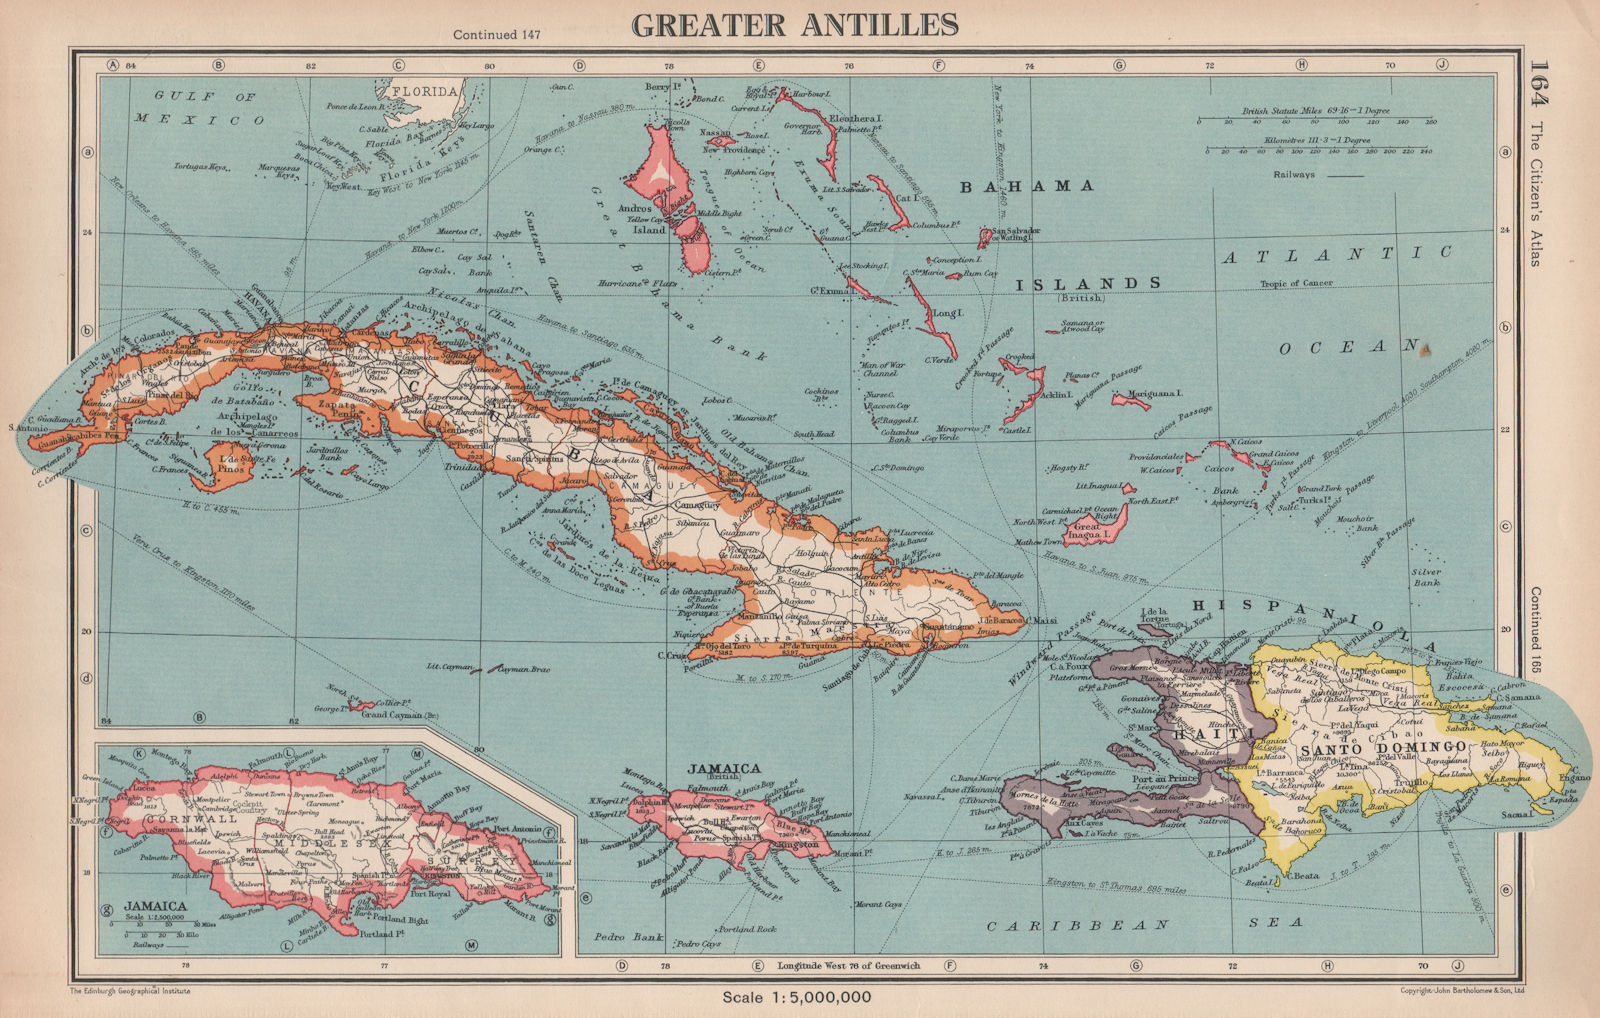 GREATER ANTILLES. Cuba Hispaniola Jamaica Bahamas. Haiti Dominican Rep. 1944 map